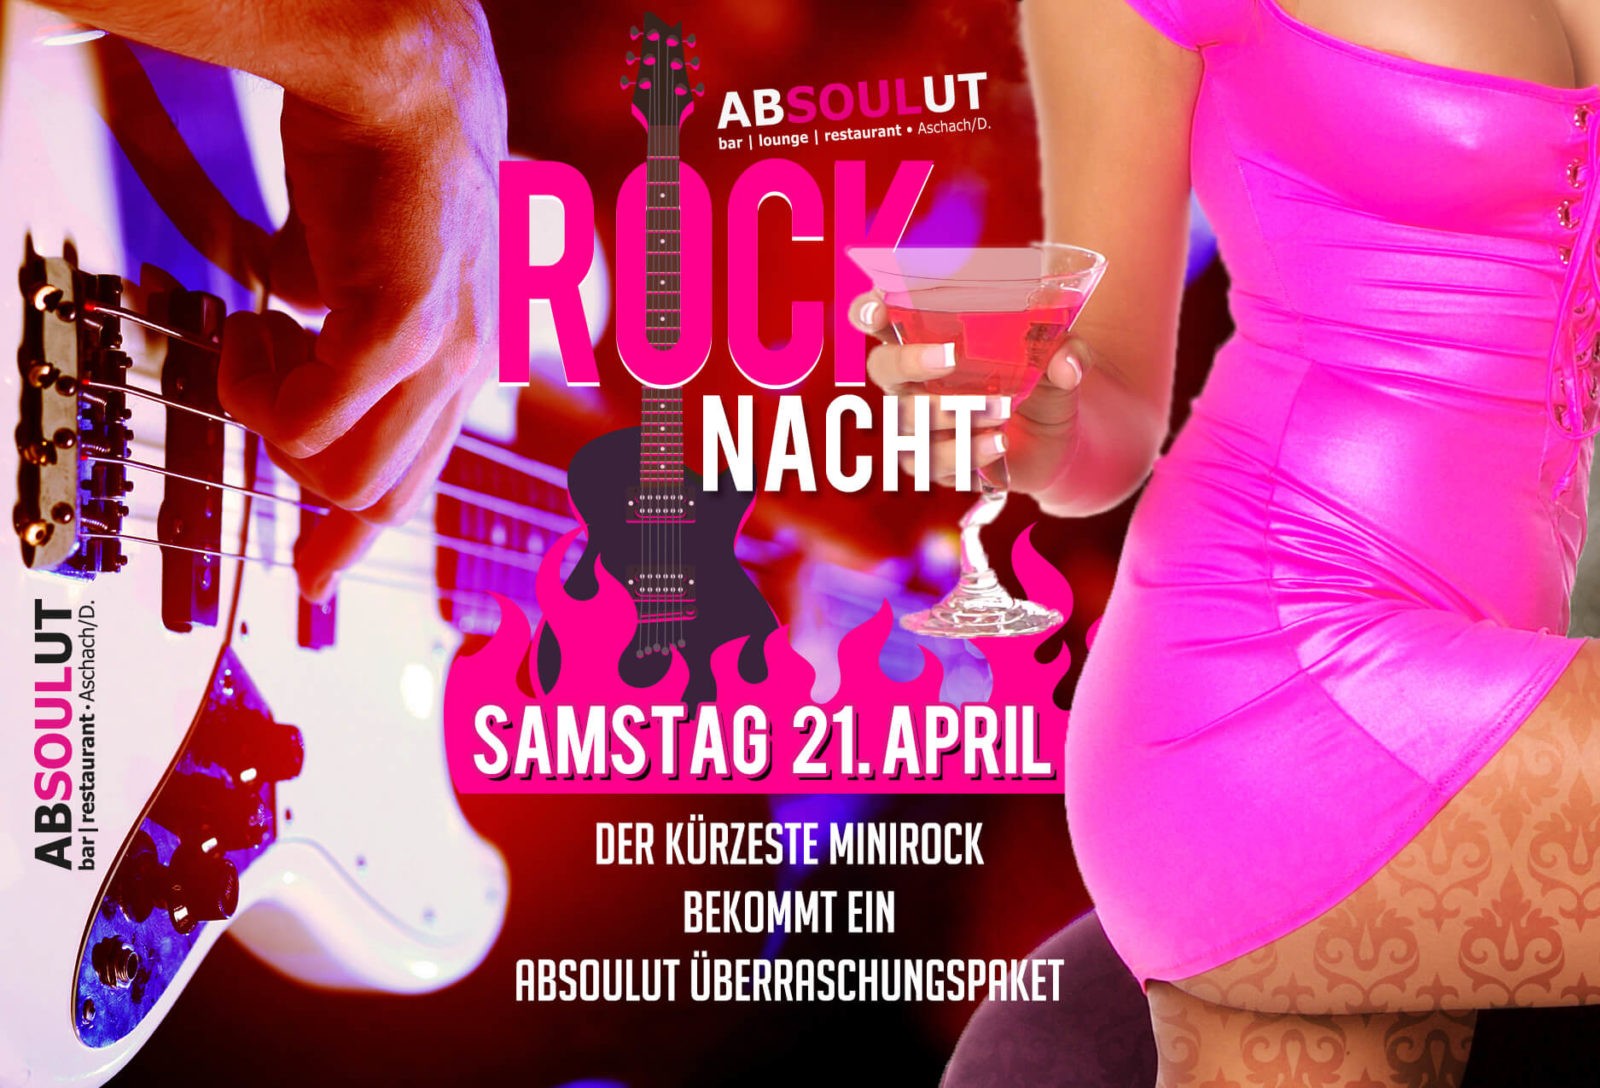 Absolut Bar Restaurant Events - Rocknacht